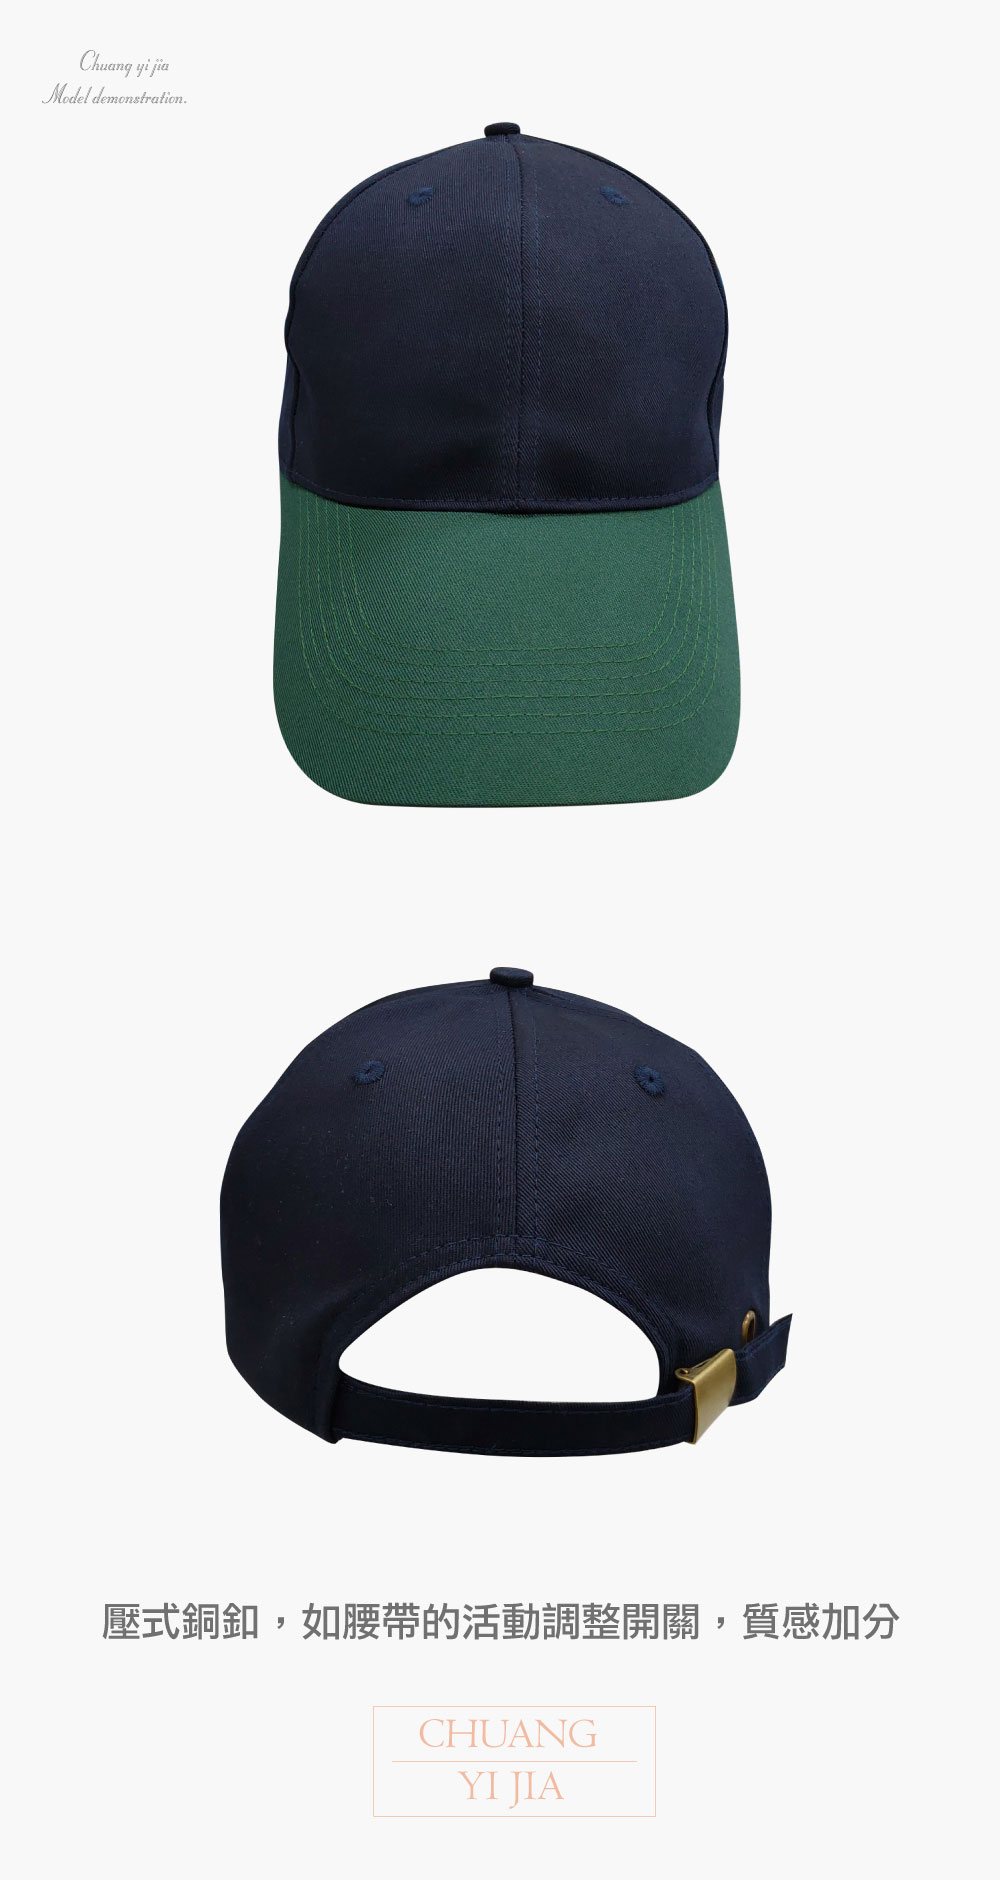 創意家團體服-六片 斜紋帽-拚色訂製款-丈青配綠